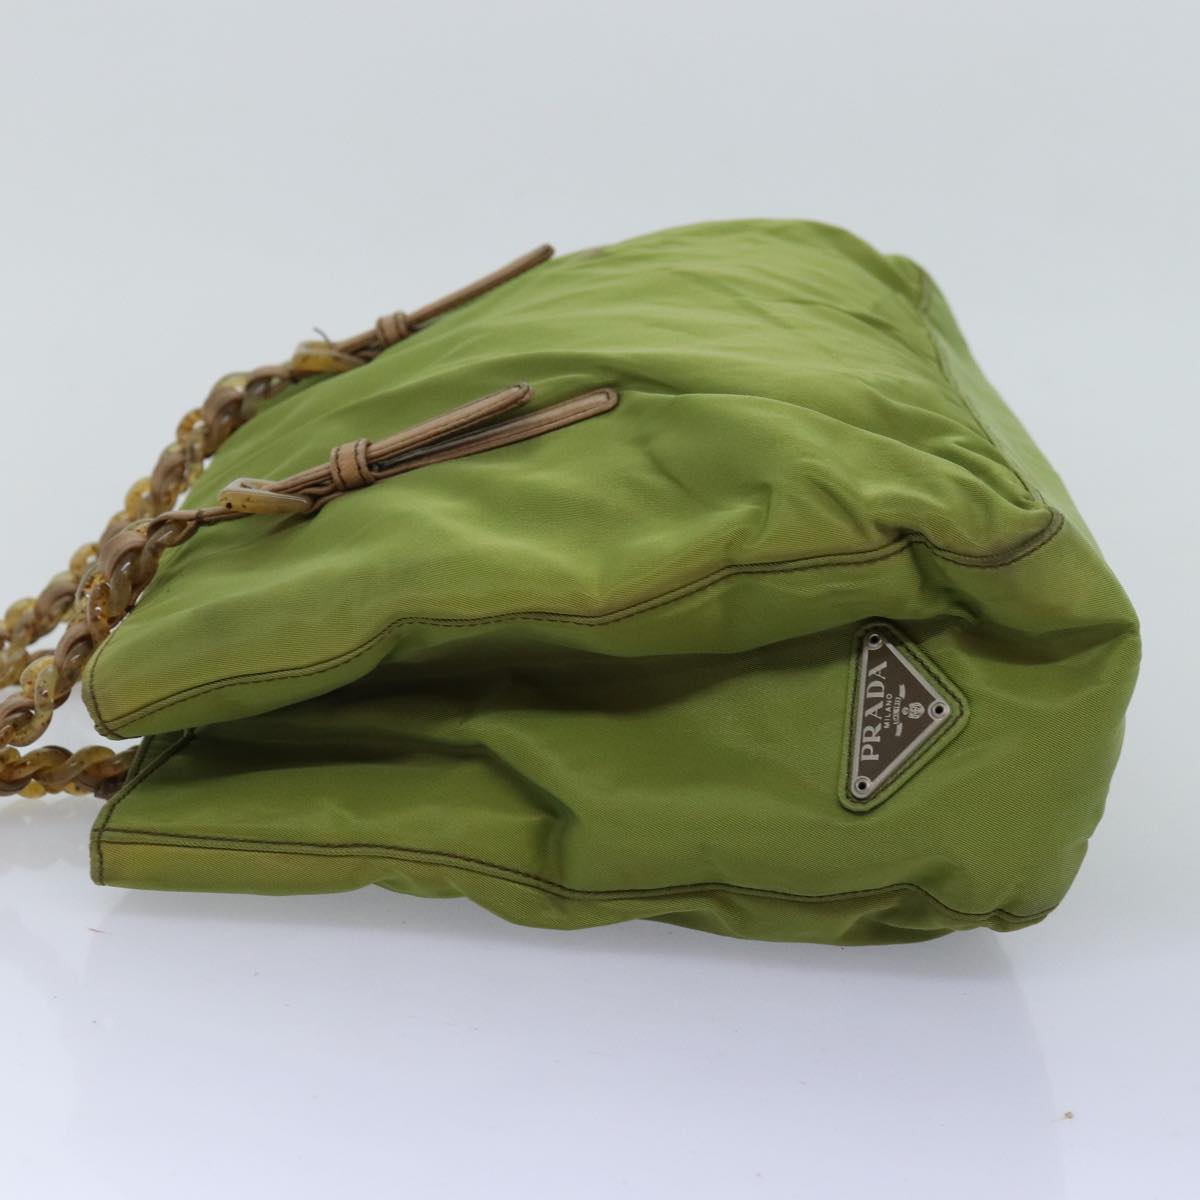 PRADA Chain Tote Bag Nylon Khaki Auth 74538